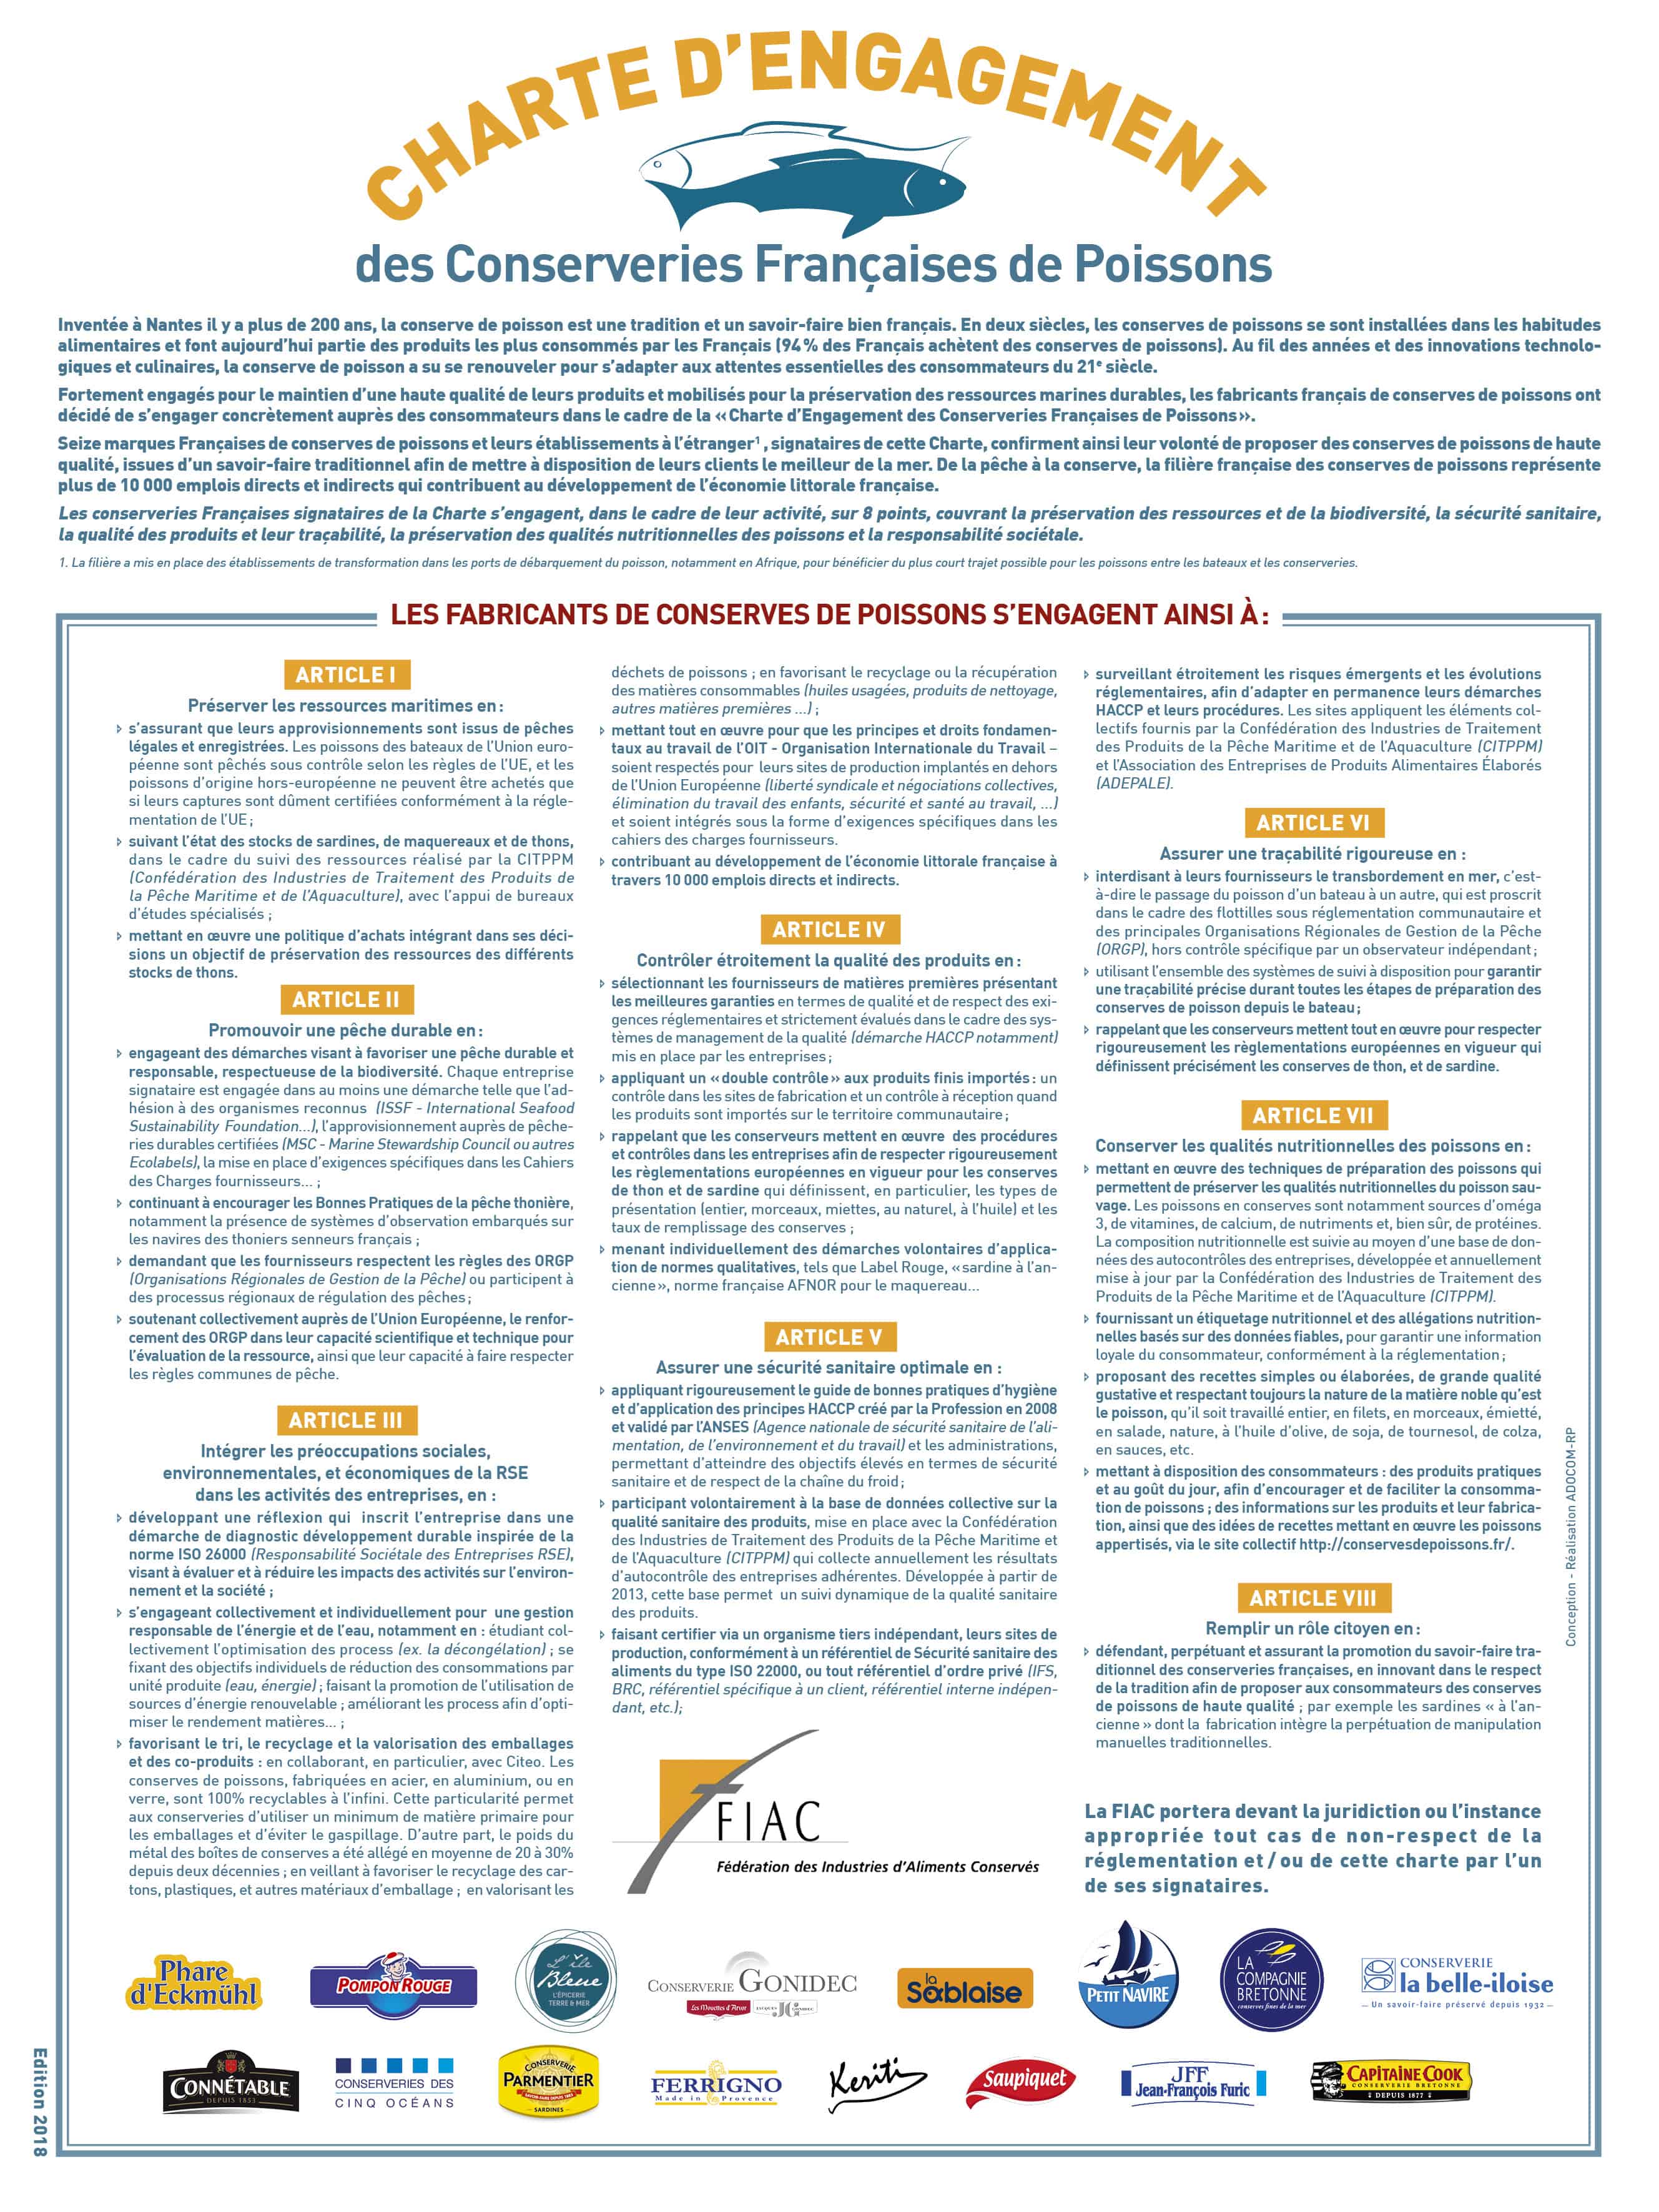 Charte d'engagement des Conserveries Françaises de Poissons